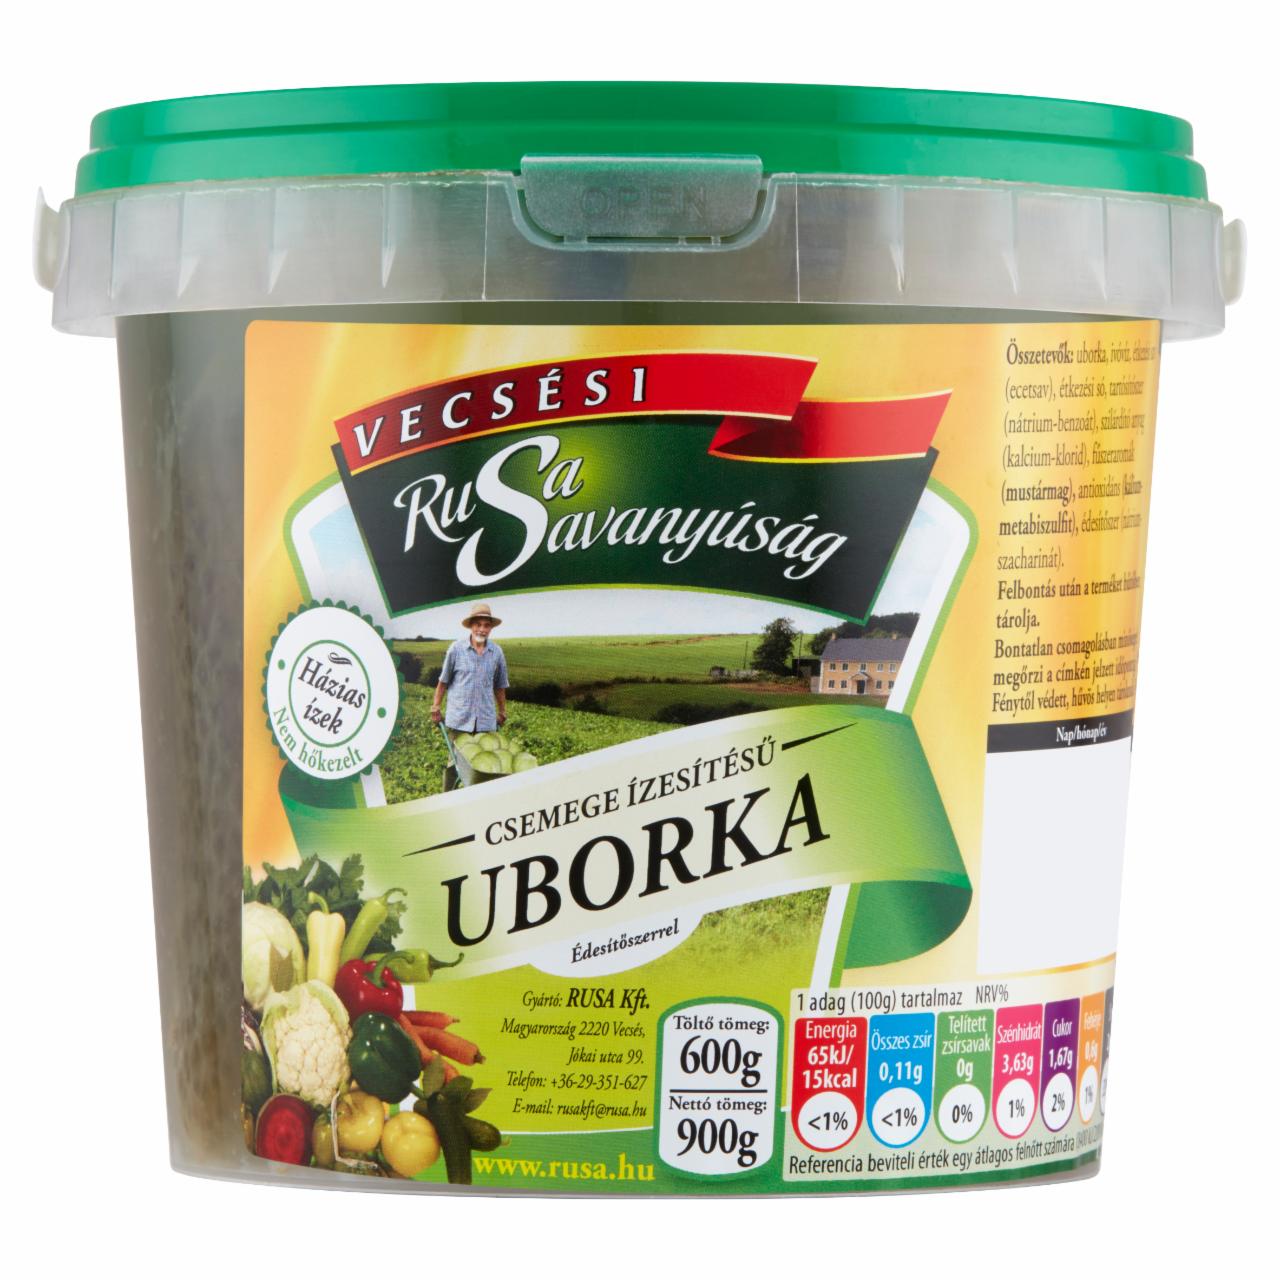 Képek - Rusa Savanyúság csemege ízesítésű uborka édesítőszerrel 900 g